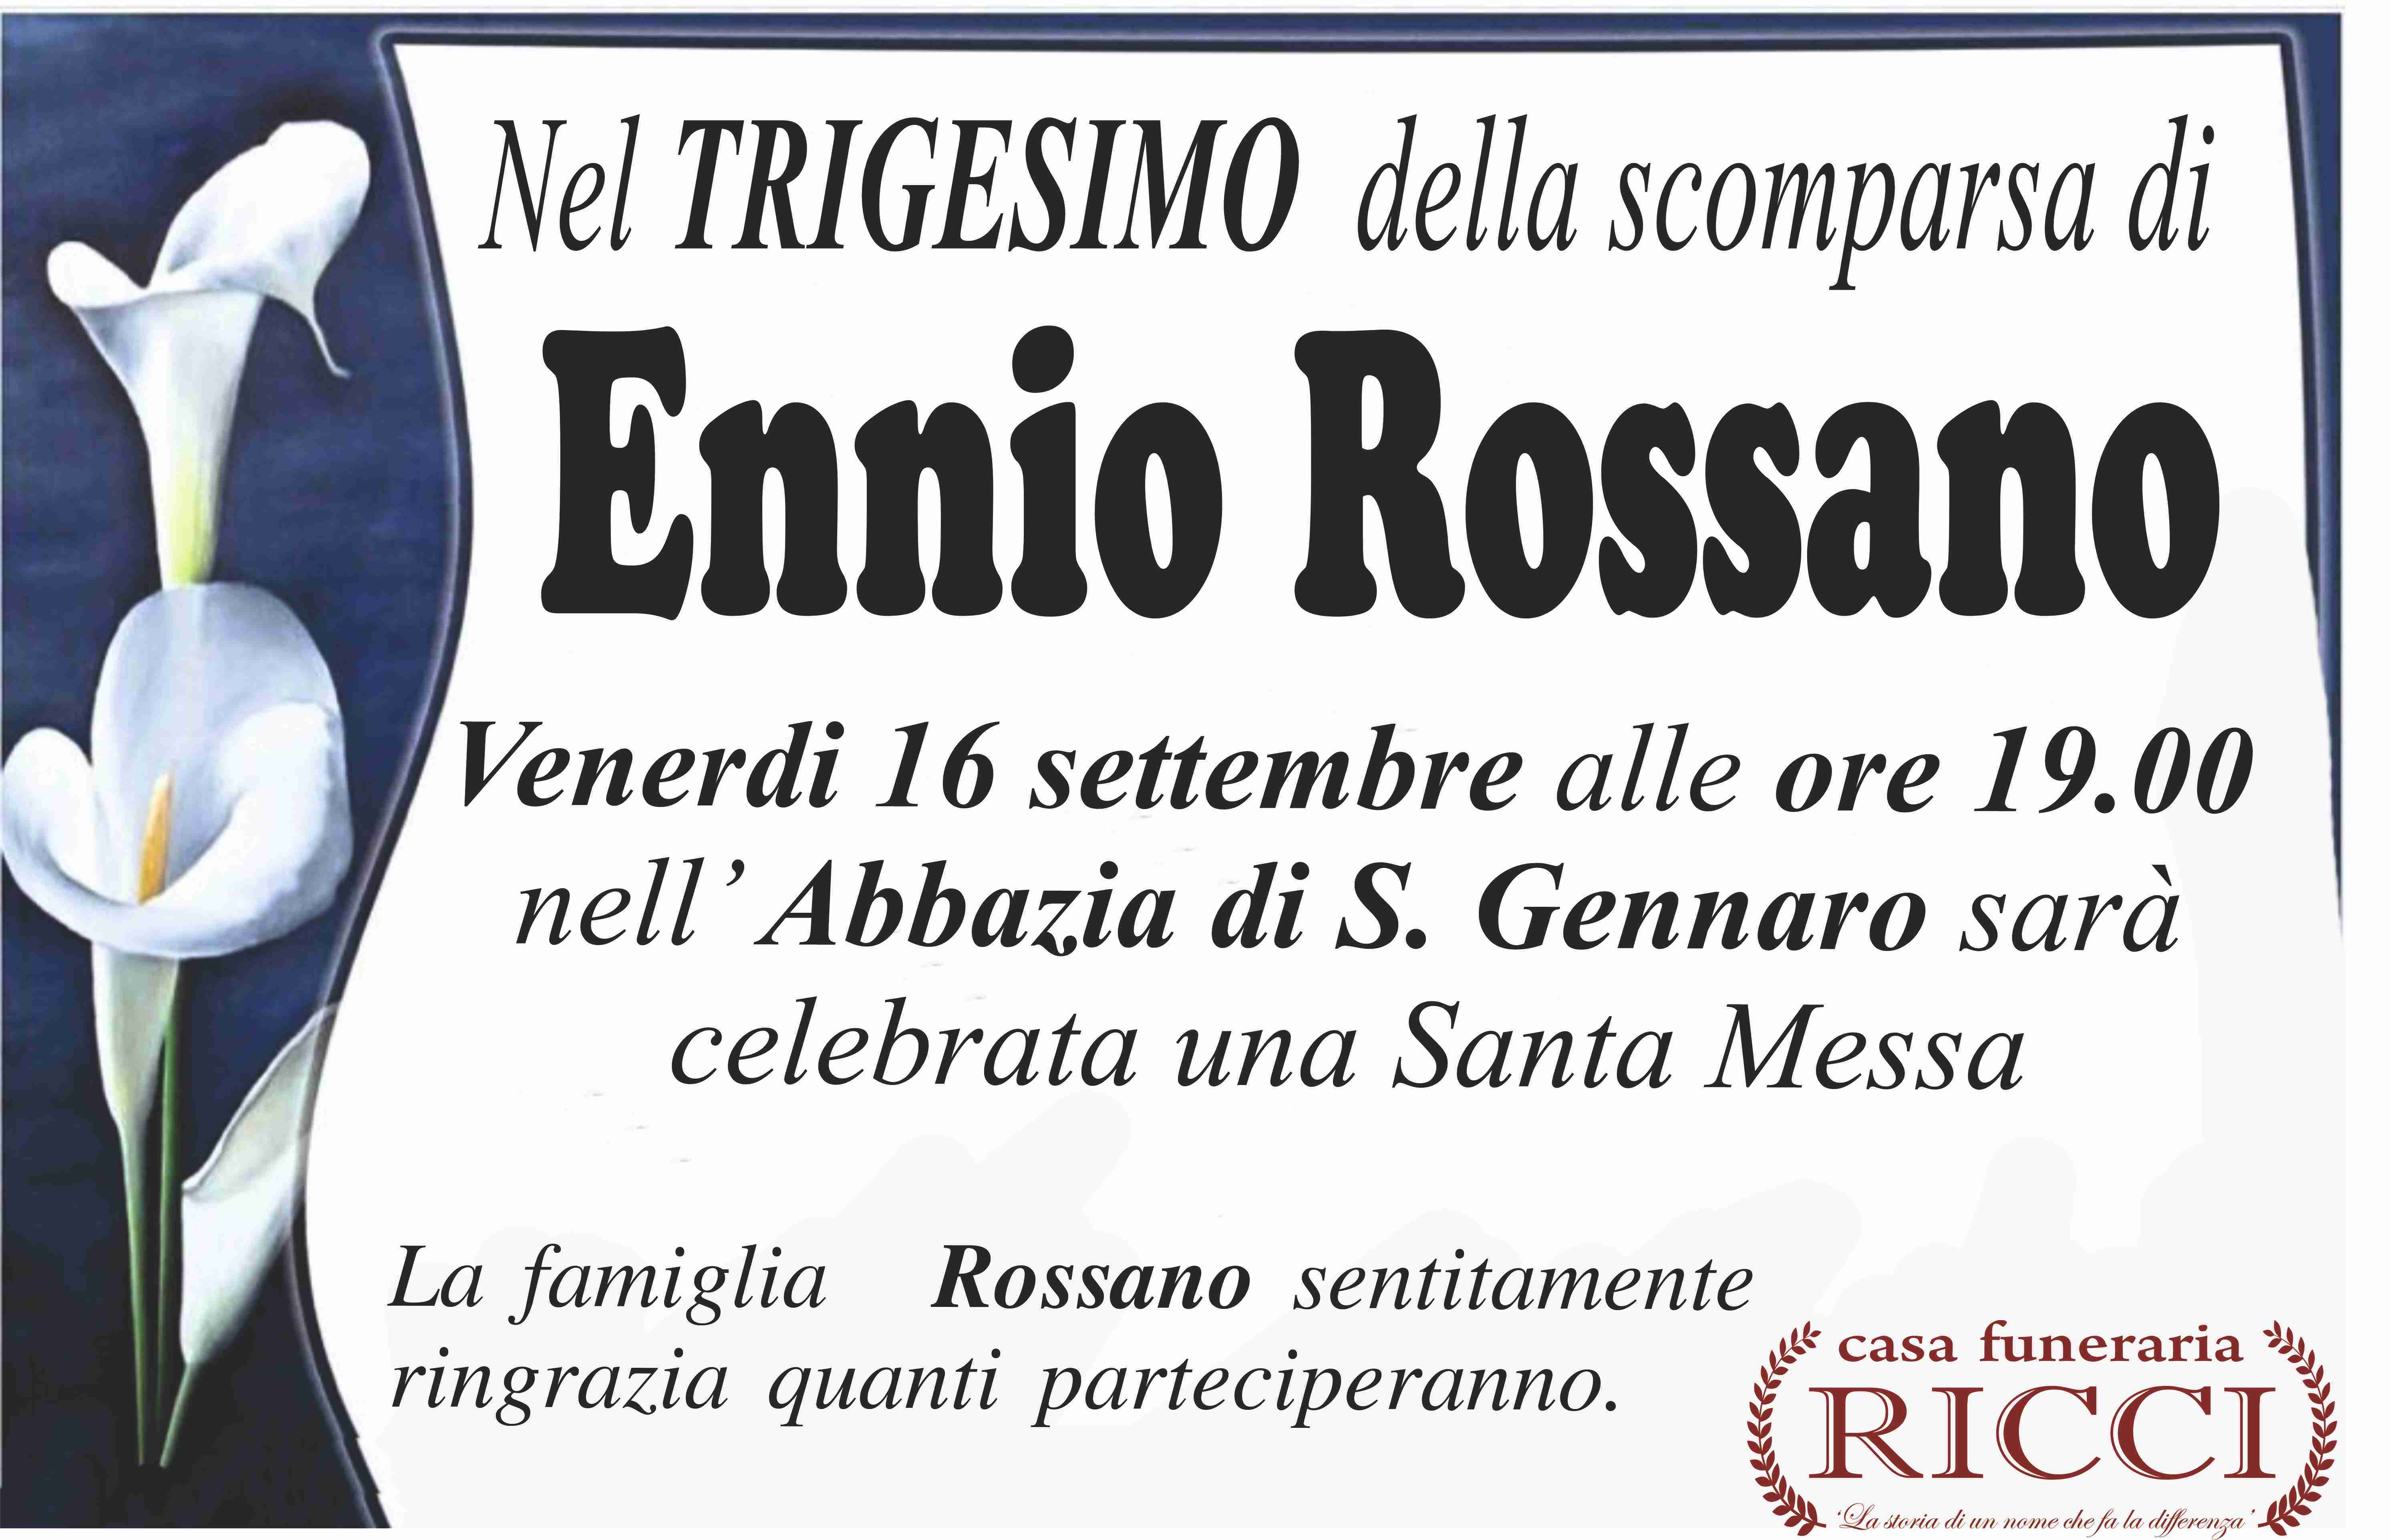 Ennio Rossano